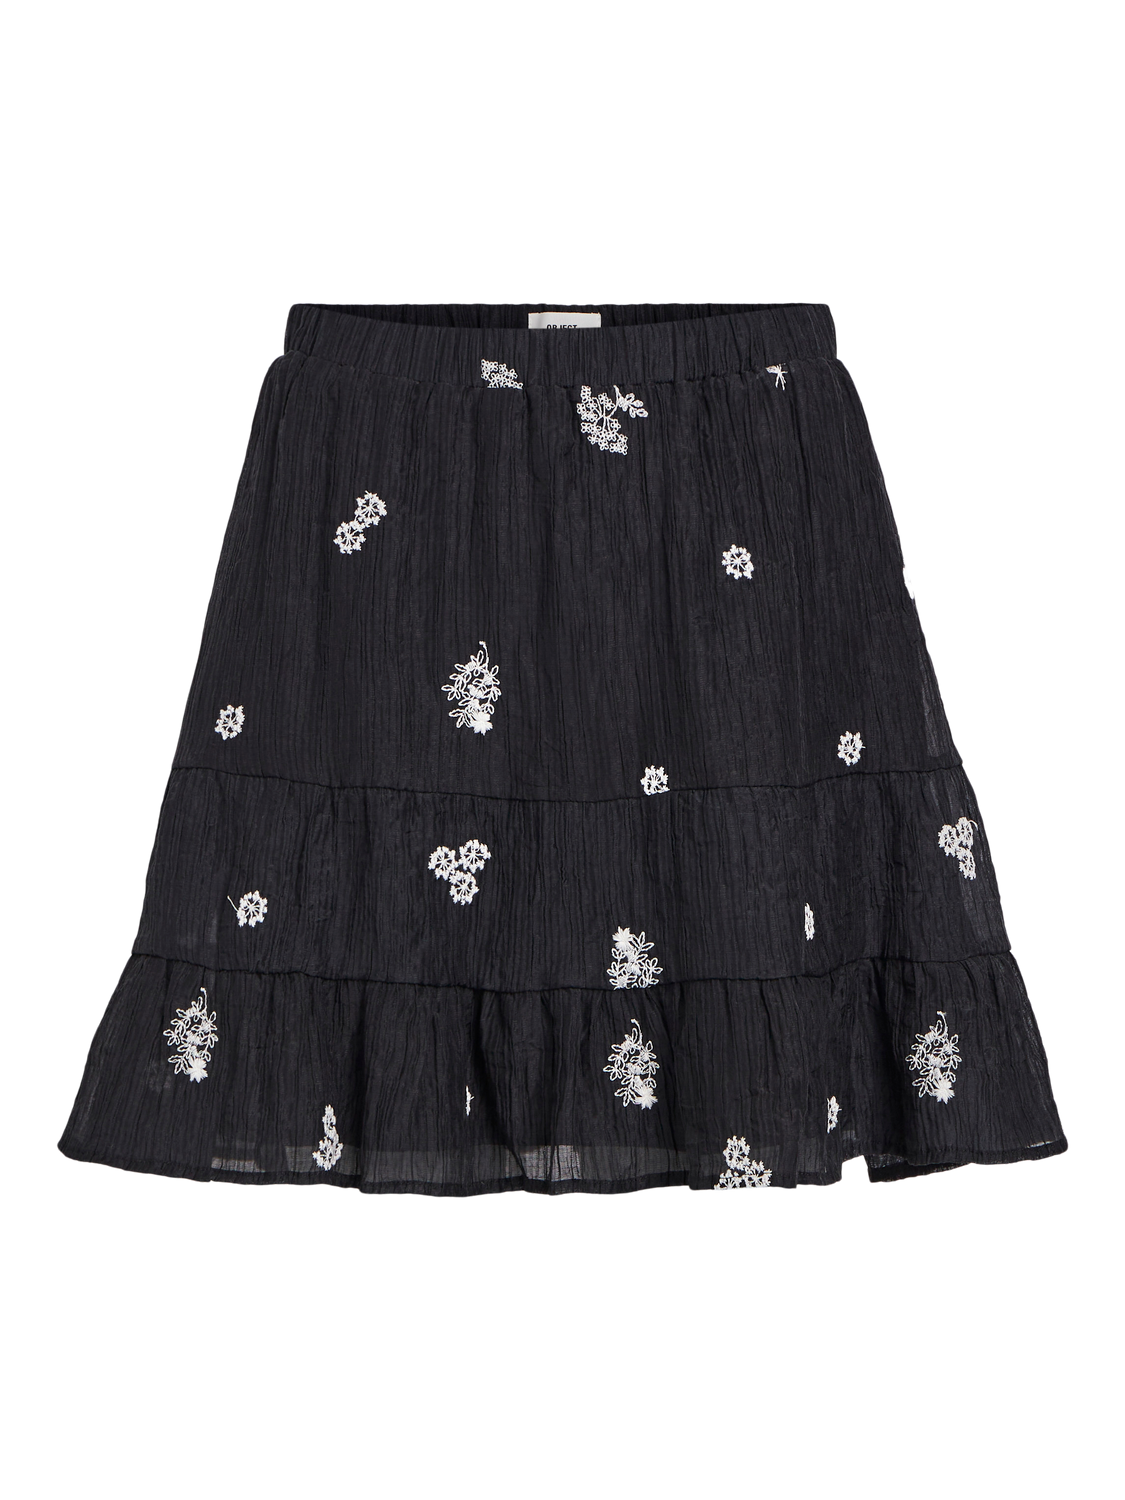 Talfra High Waisted Skirt (Black/Sandshell)